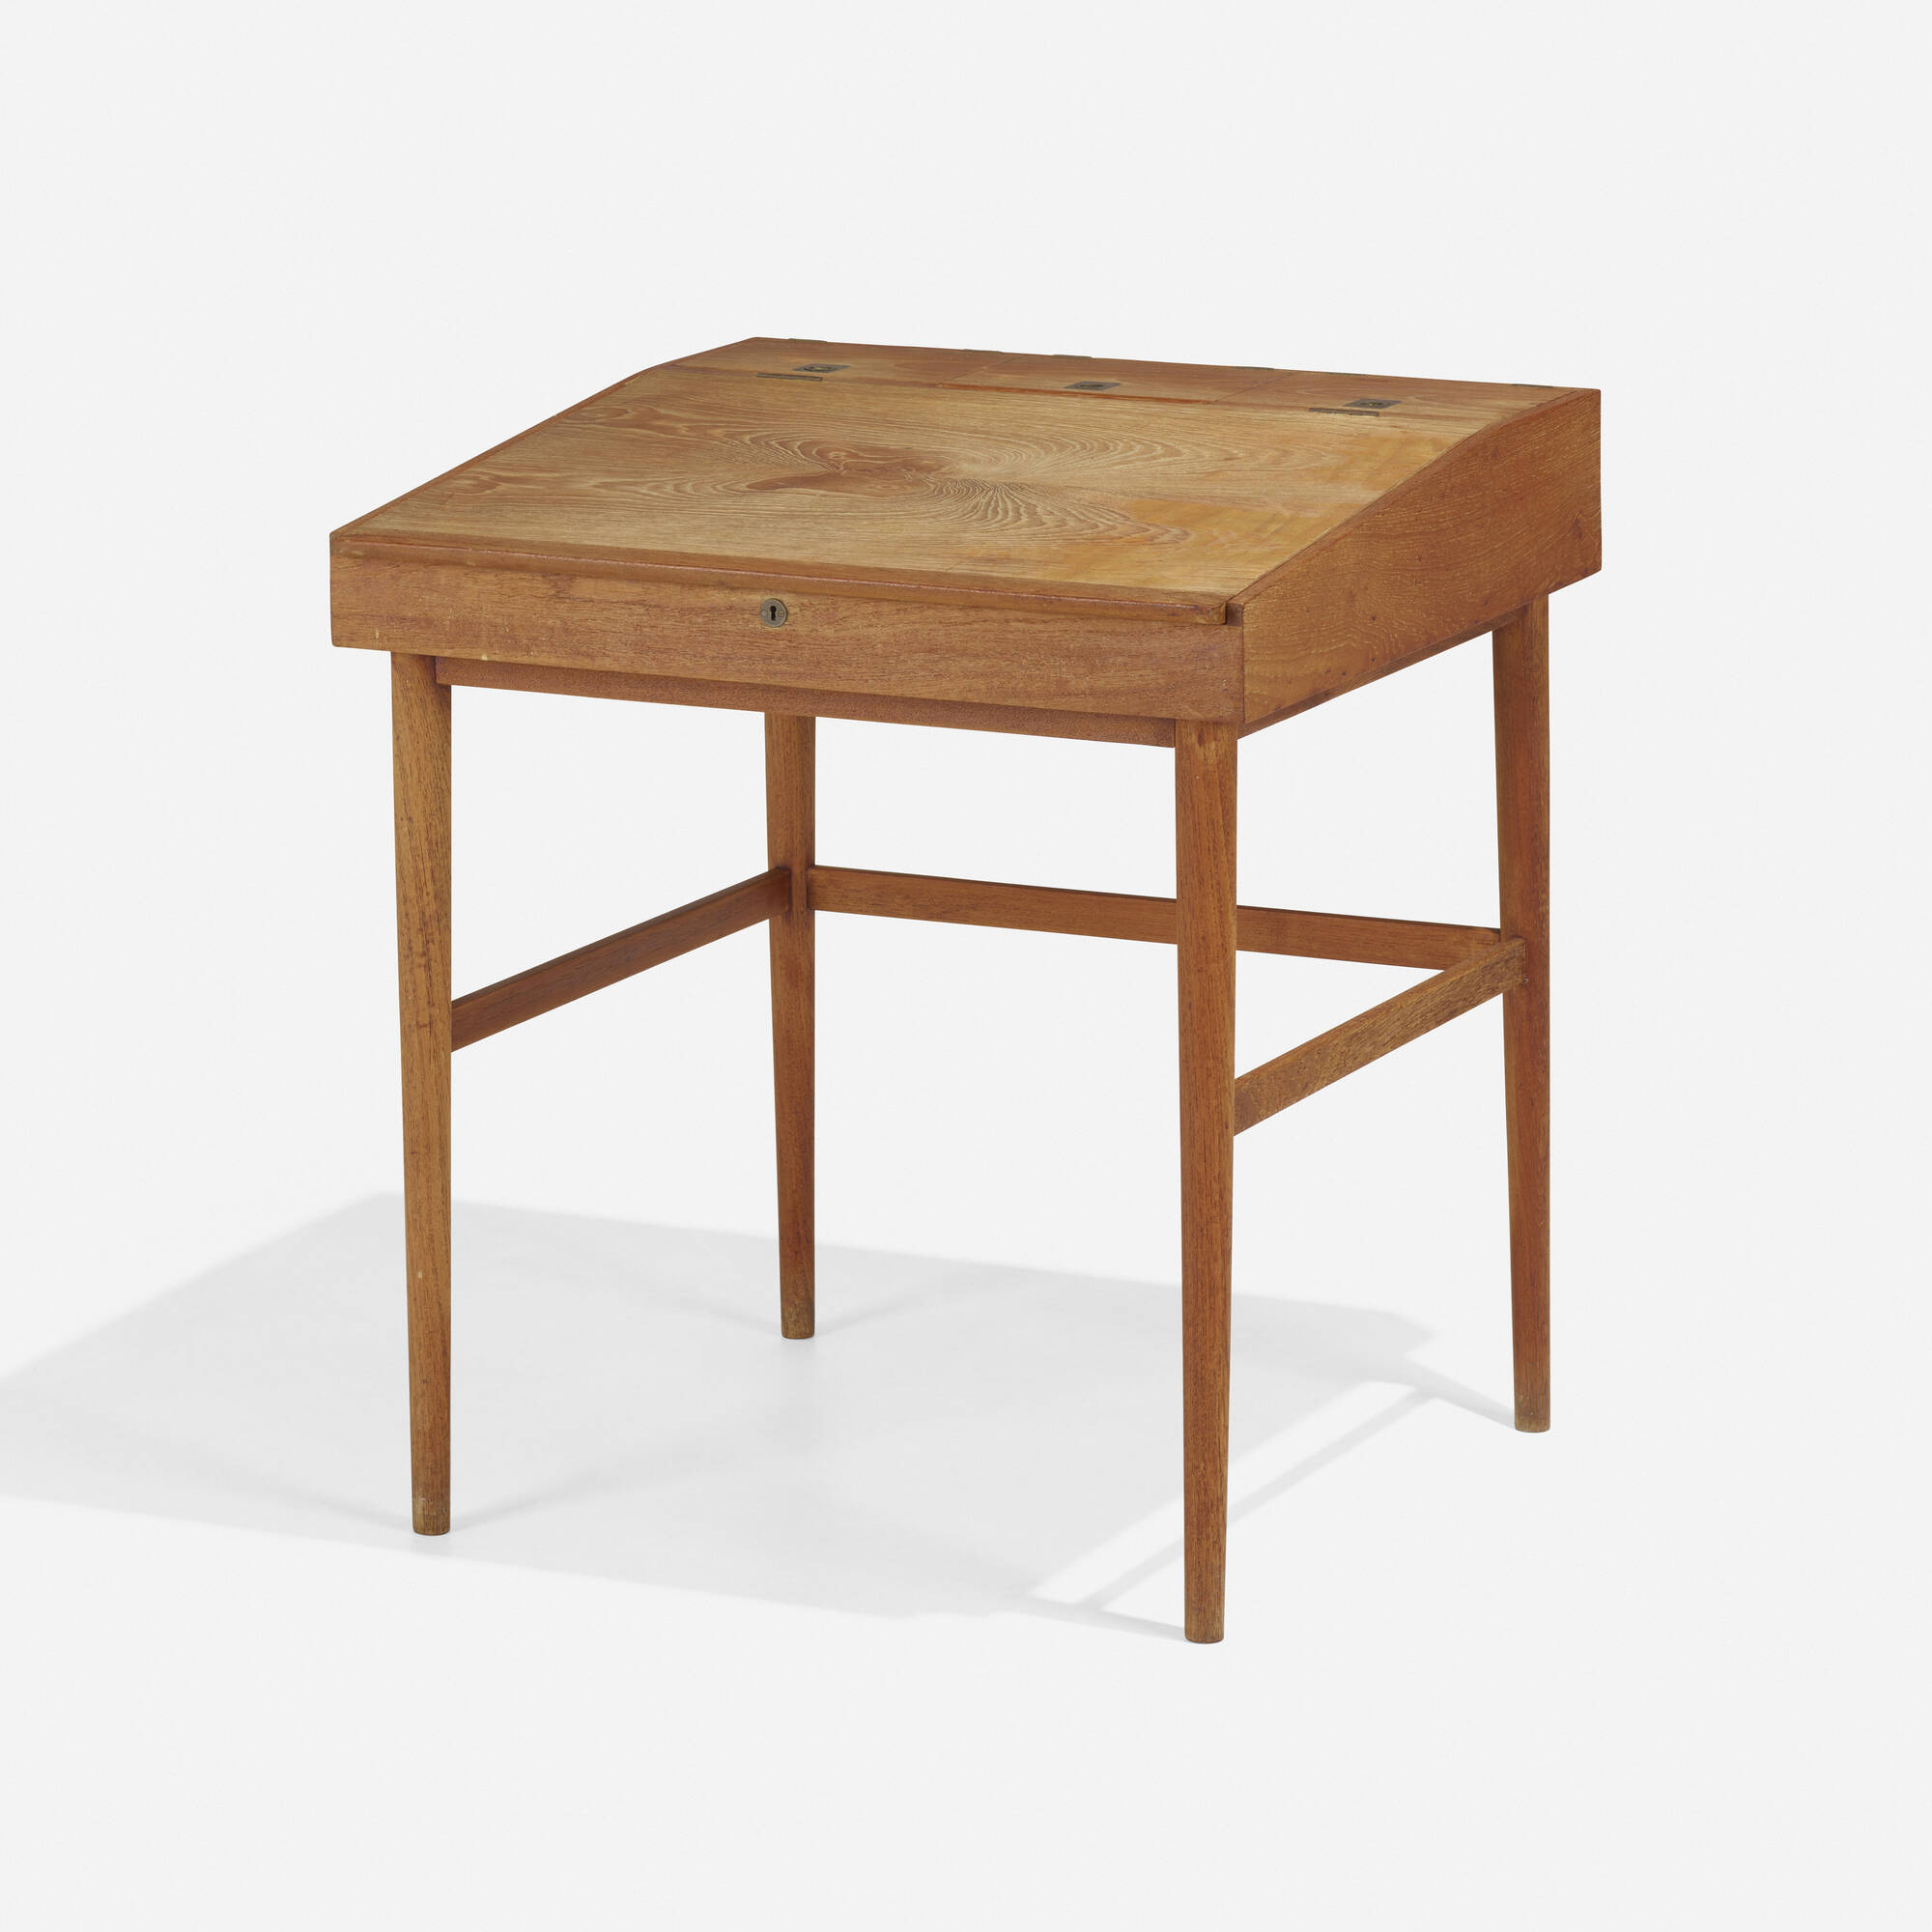 161: FINN JUHL, Desk, model NV-40 < Scandinavian Design, 21 